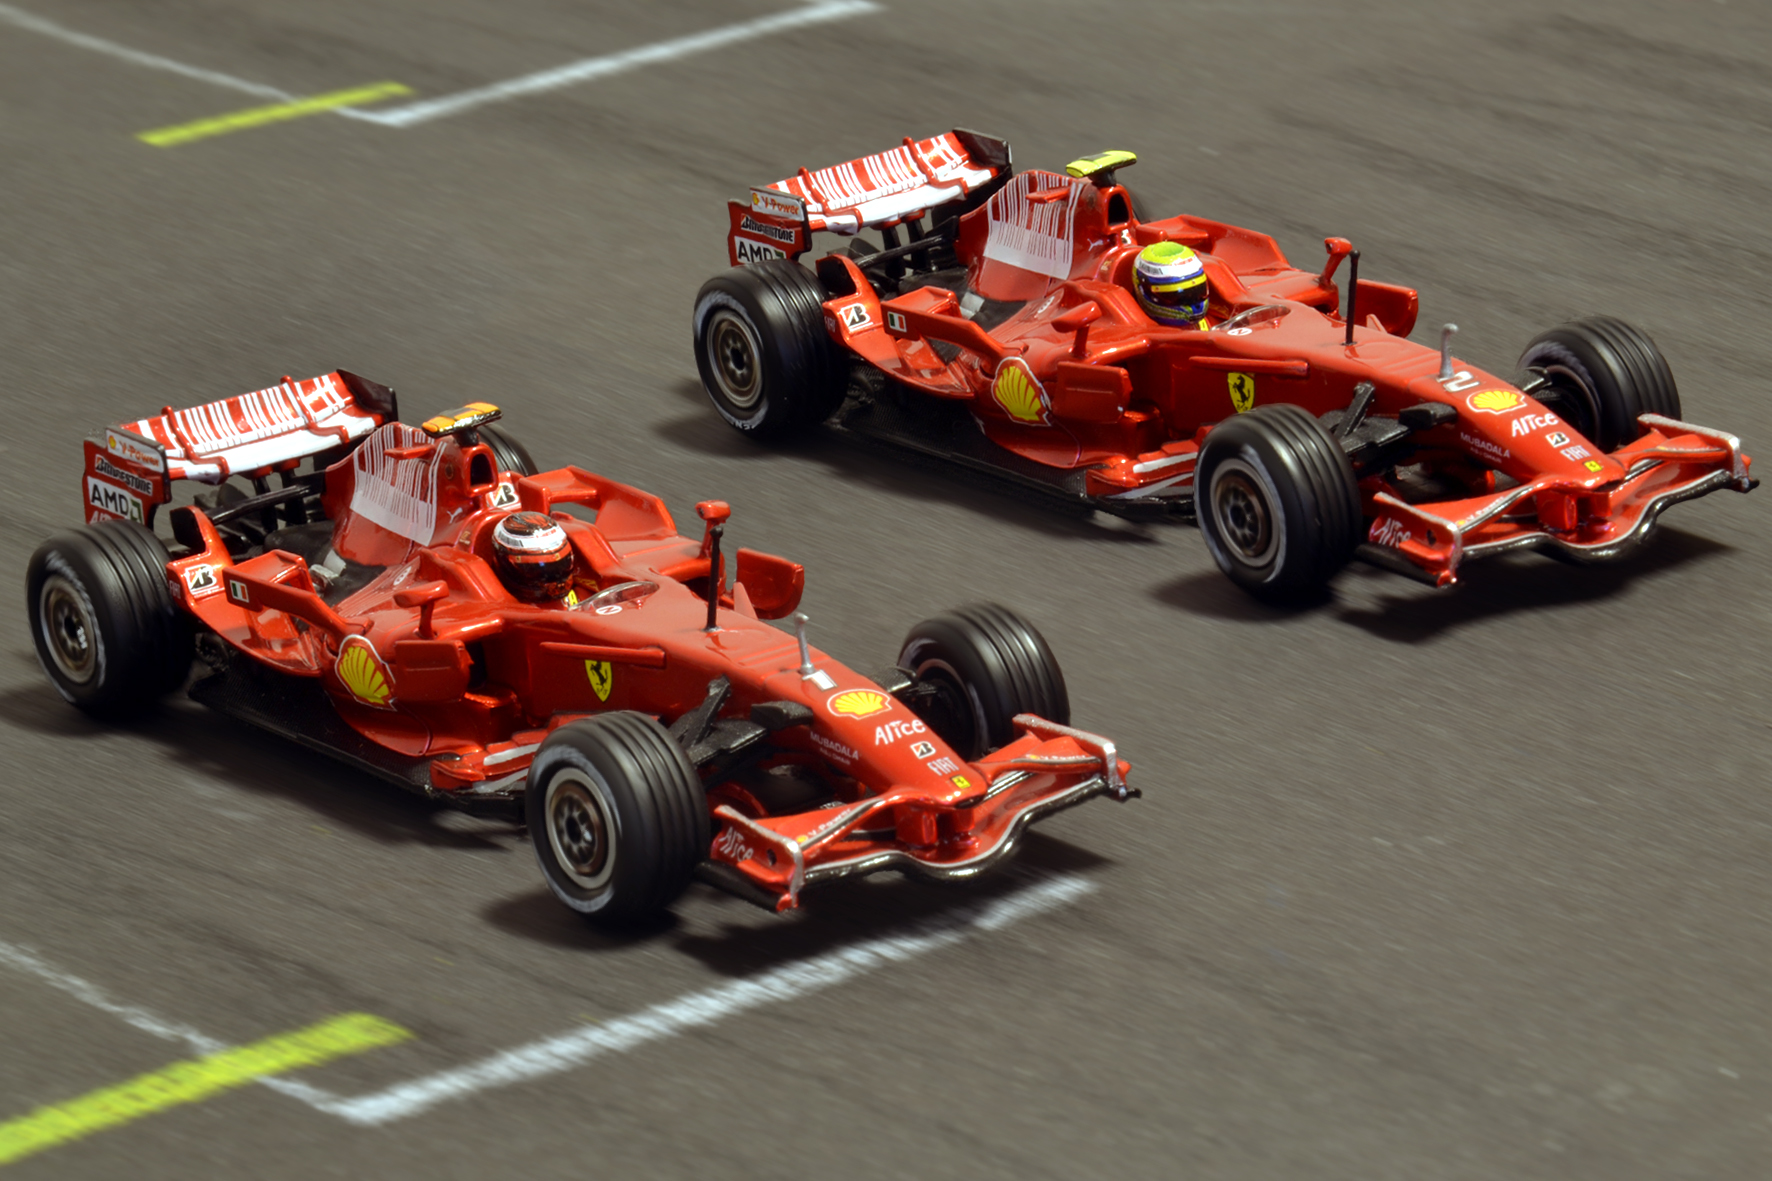 Ferrari F2008 Kimi Räikkönen & Felipe Massa 2008 - Hot Wheels 1:43